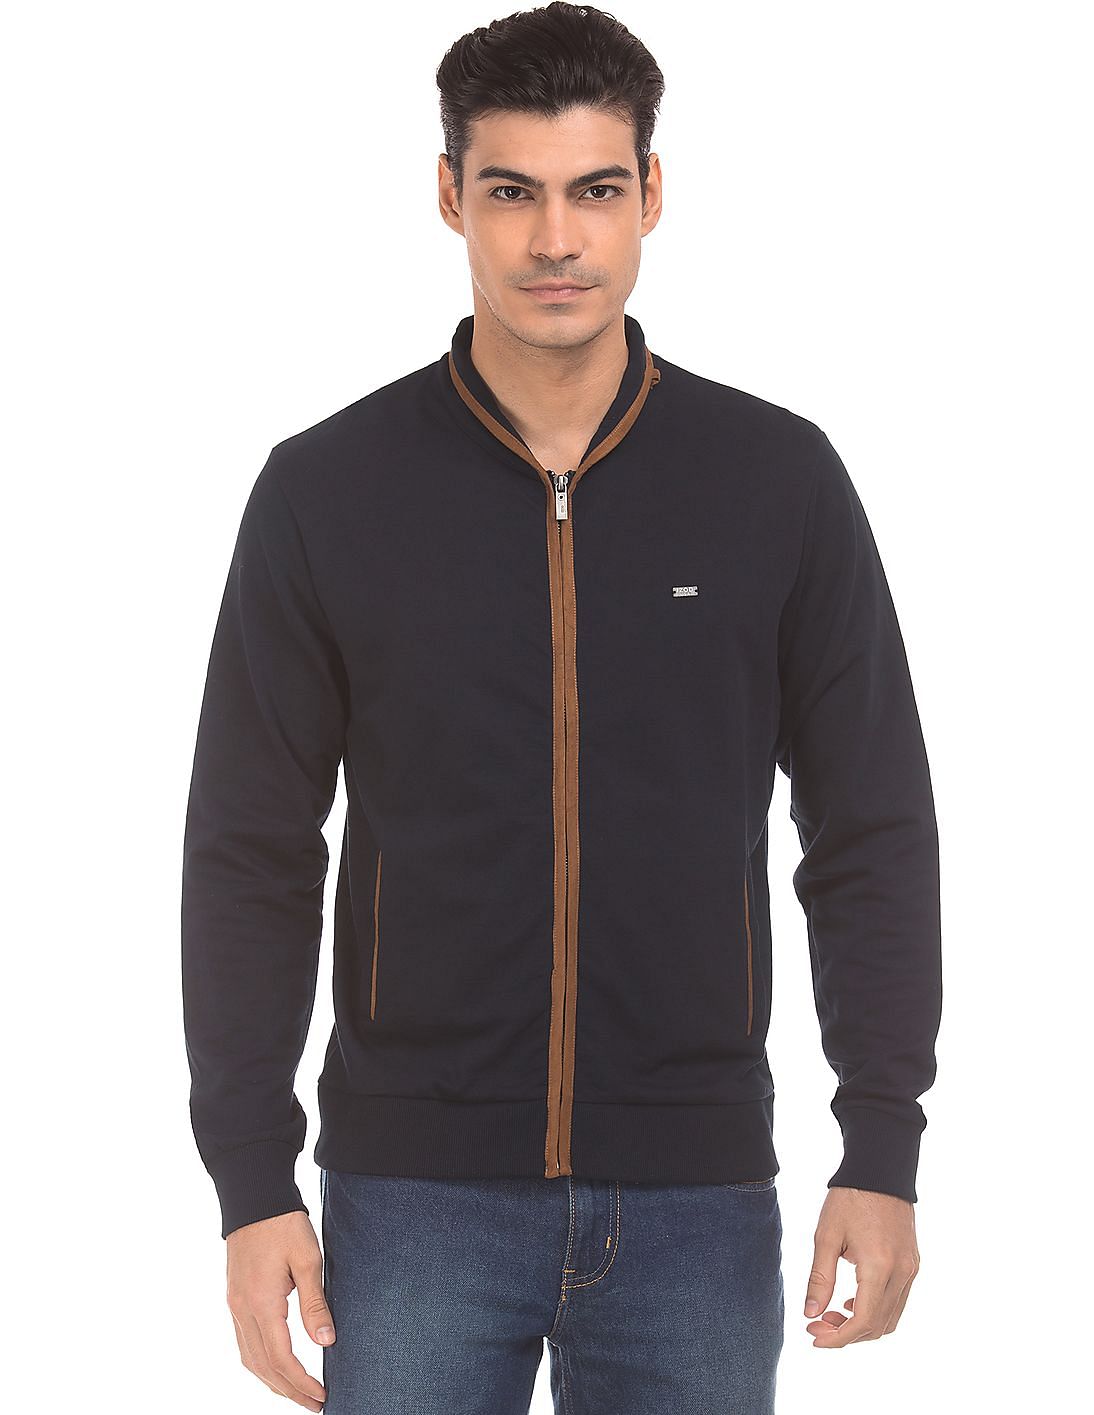 Buy Izod Men Contrast Trim Zip Up Sweatshirt - NNNOW.com